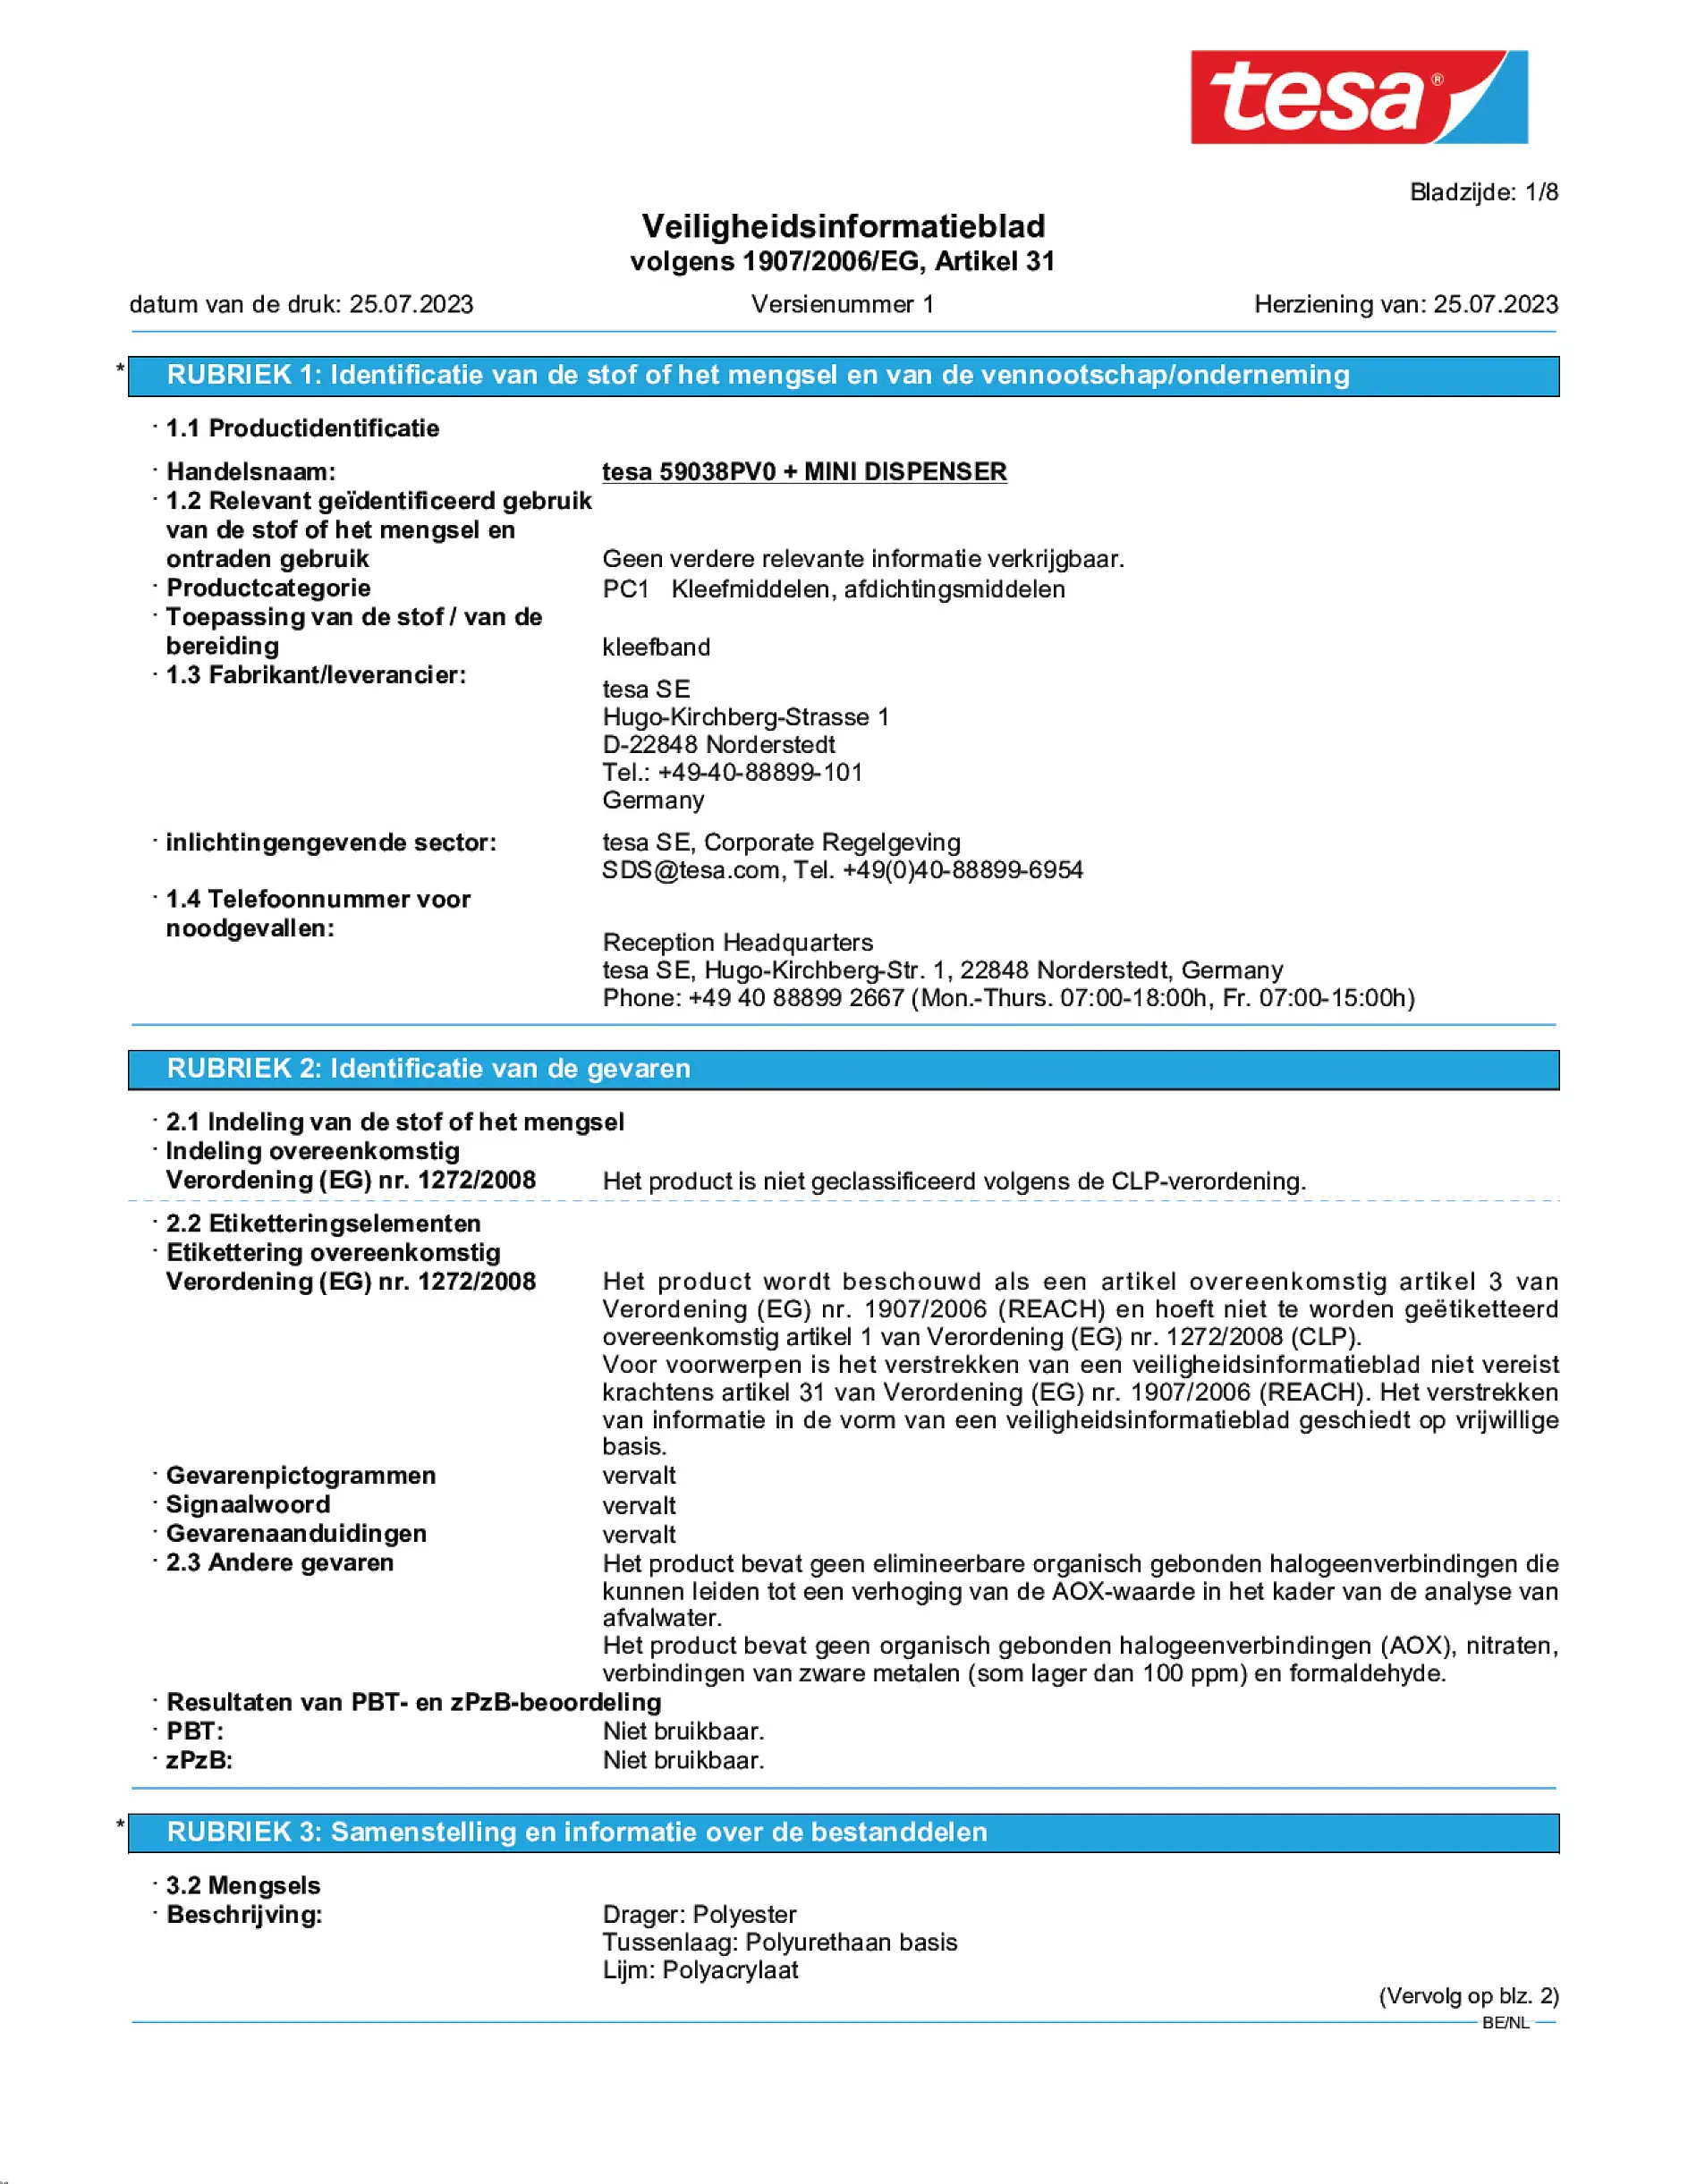 Safety data sheet_tesafilm® 59038_nl-BE_v1